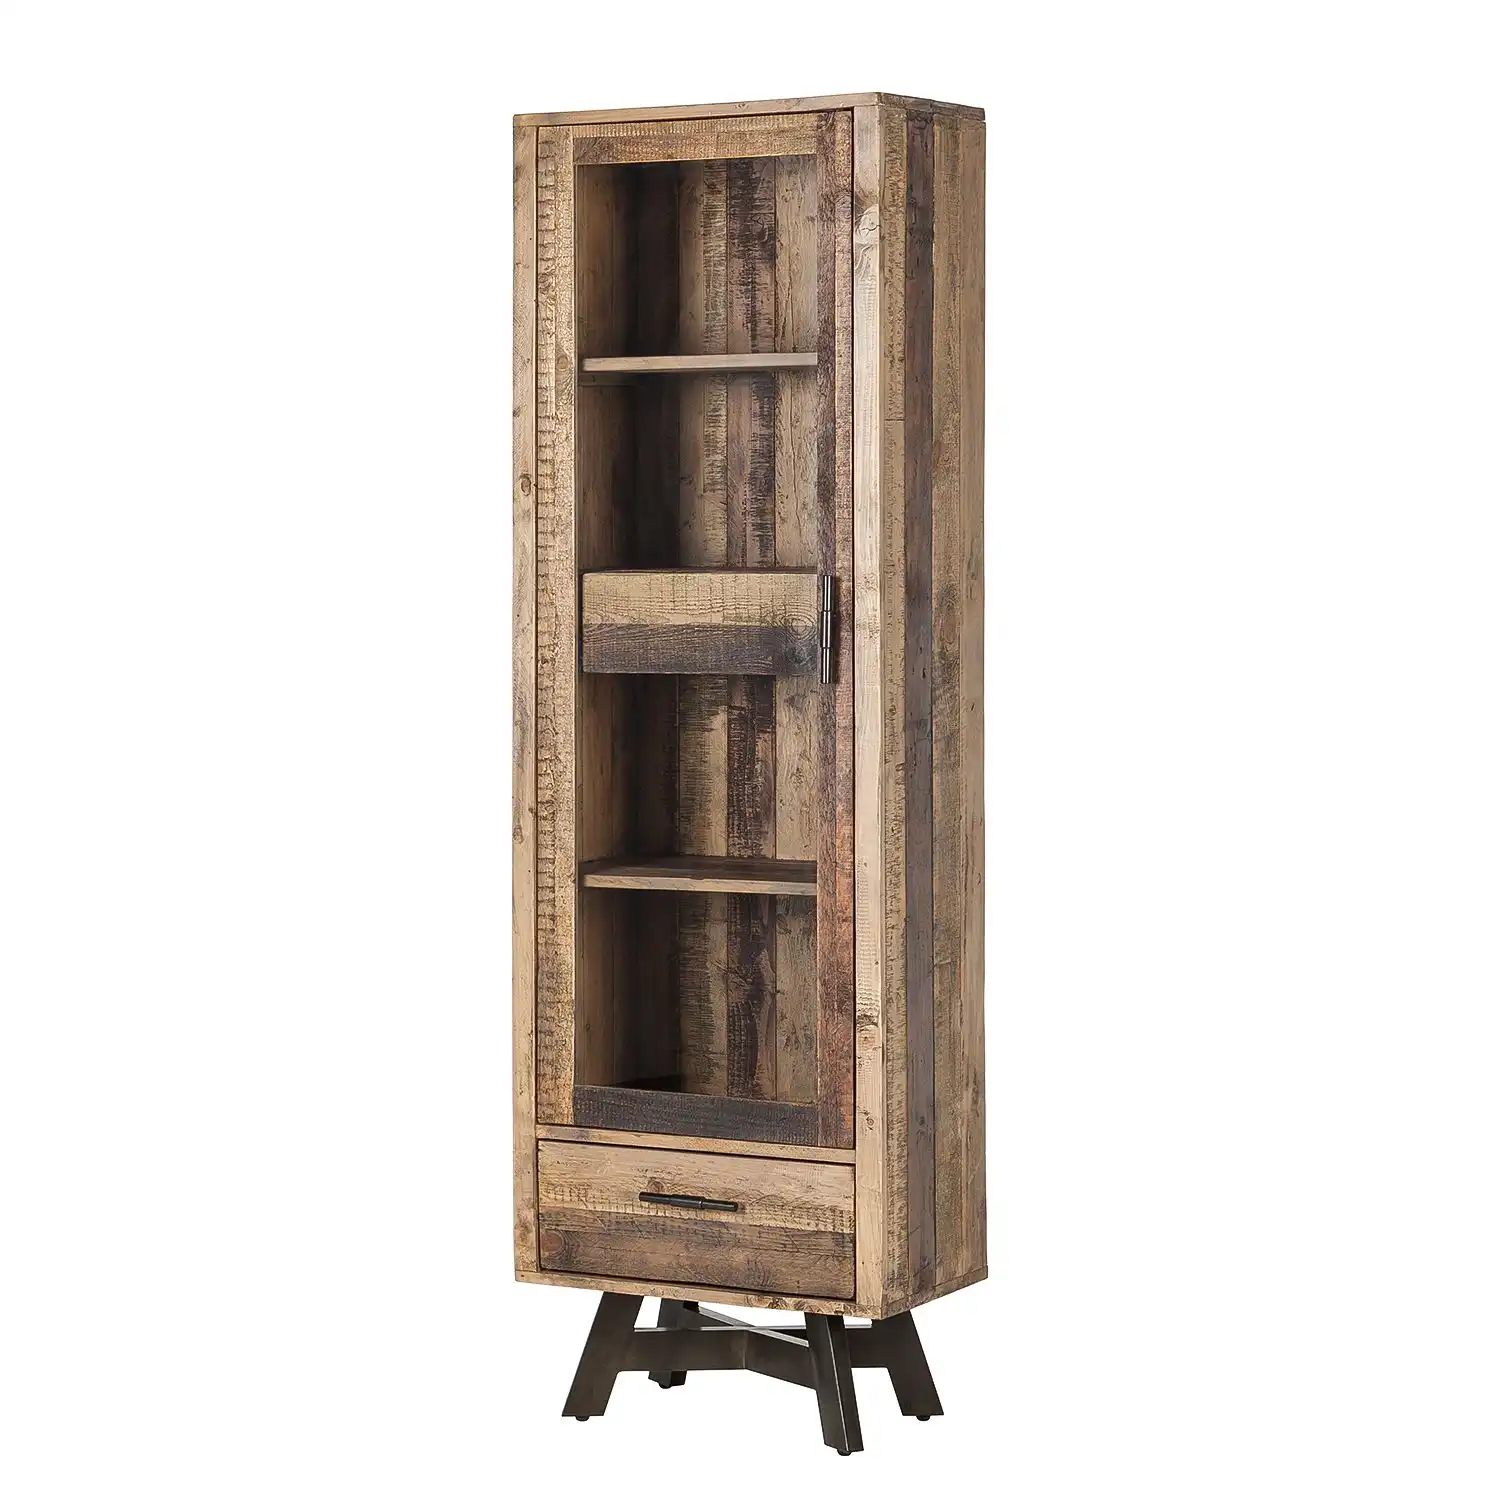 Reclaimed Wood Almirah with 1 glass door & 1 drawer - popular handicrafts